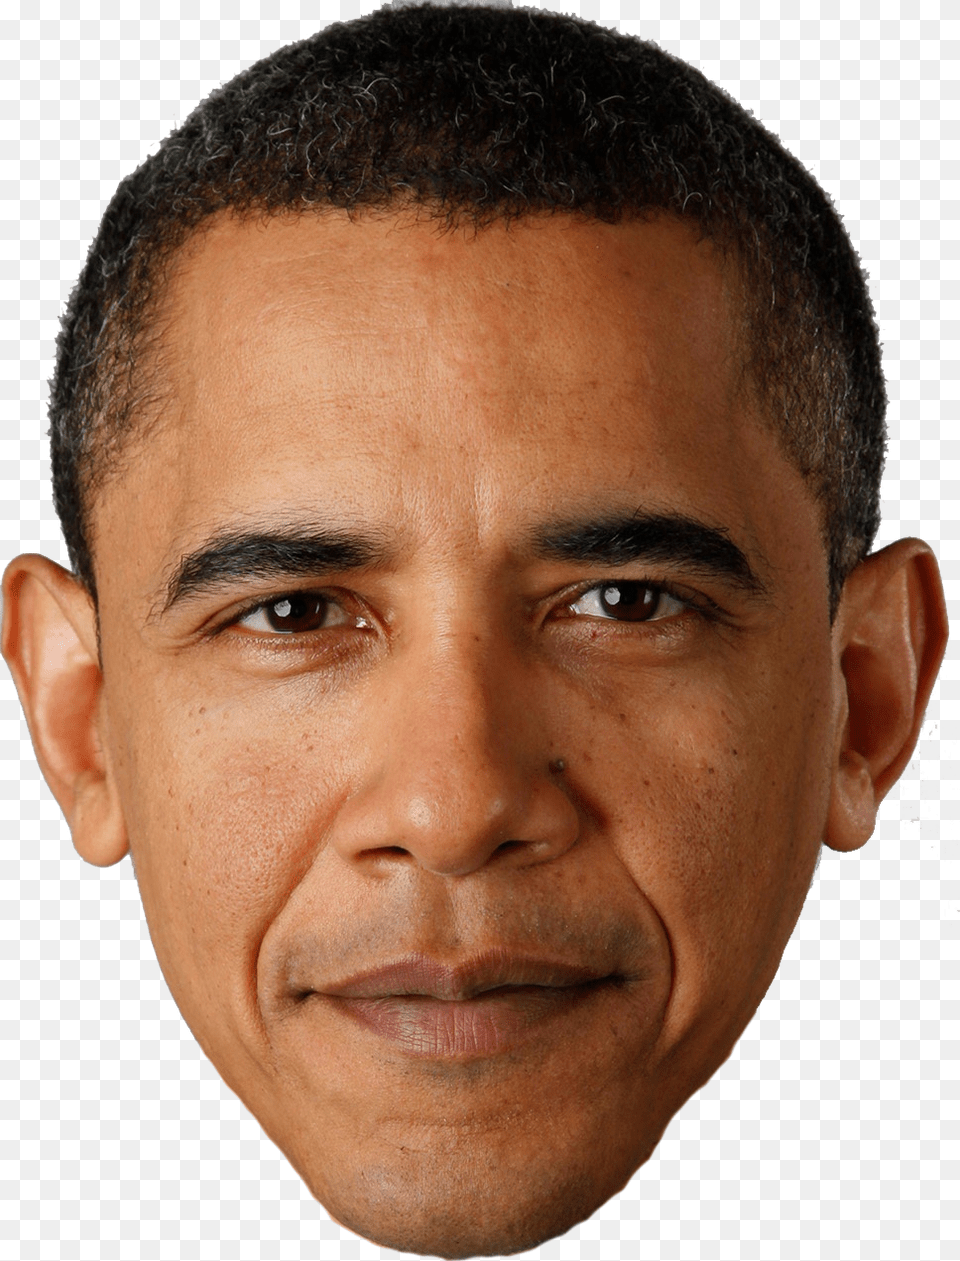 Barack Obama, Adult, Sad, Portrait, Photography Free Png Download